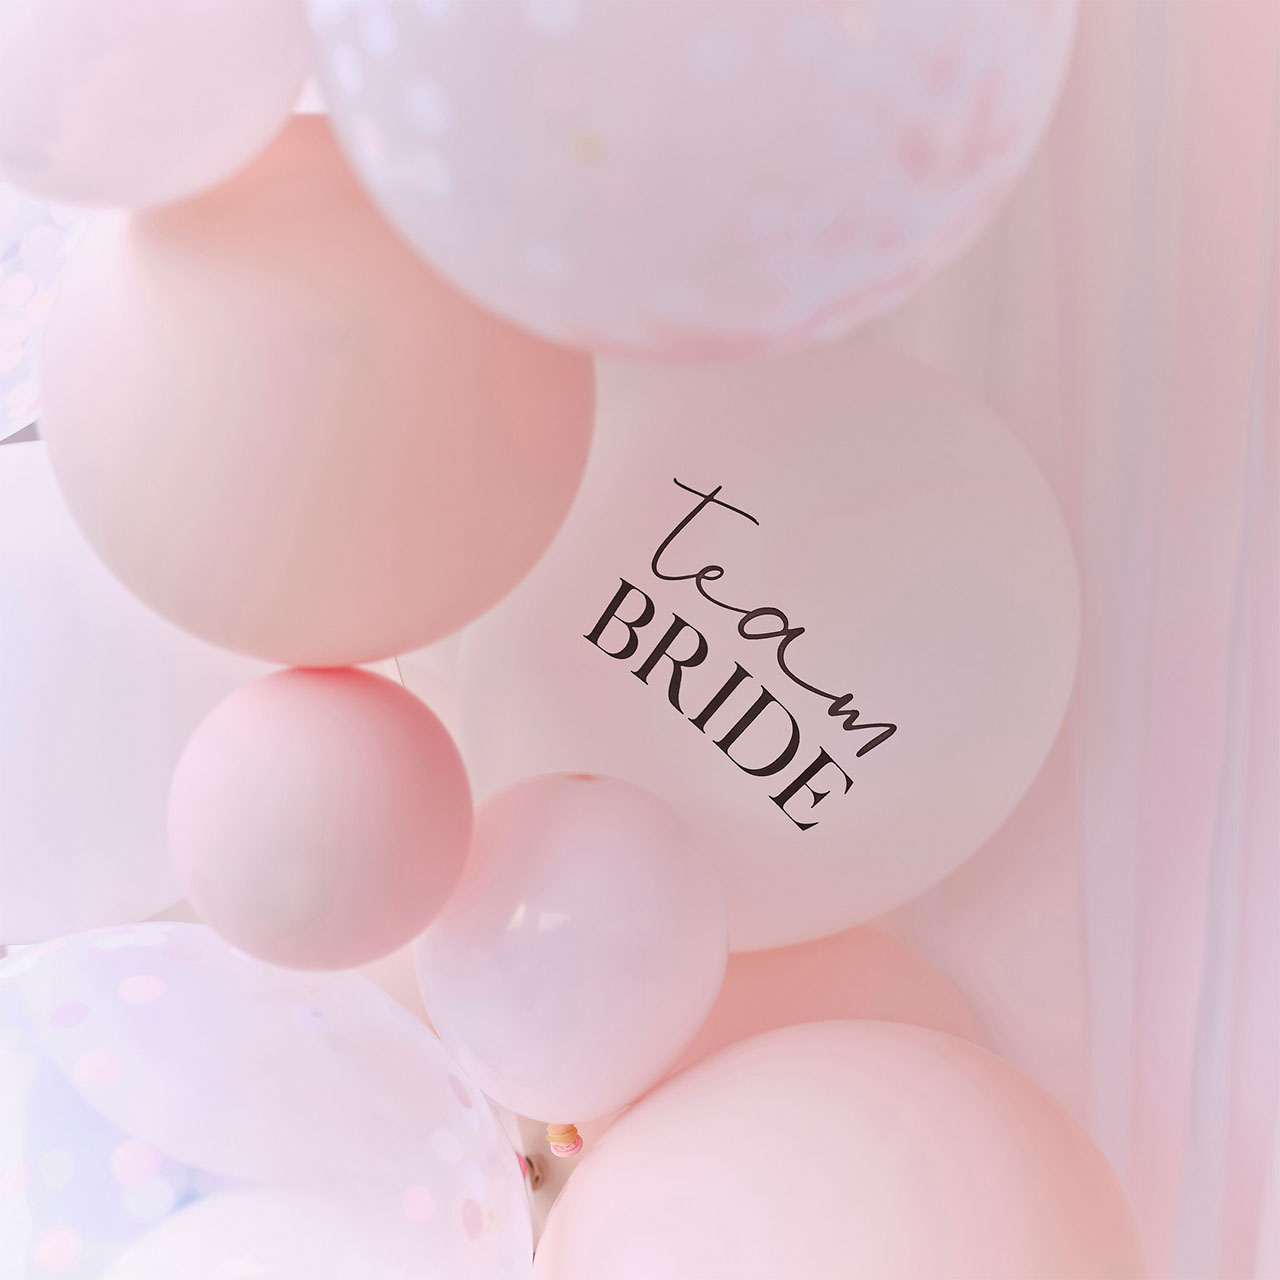 Balloon Garland - Team Bride